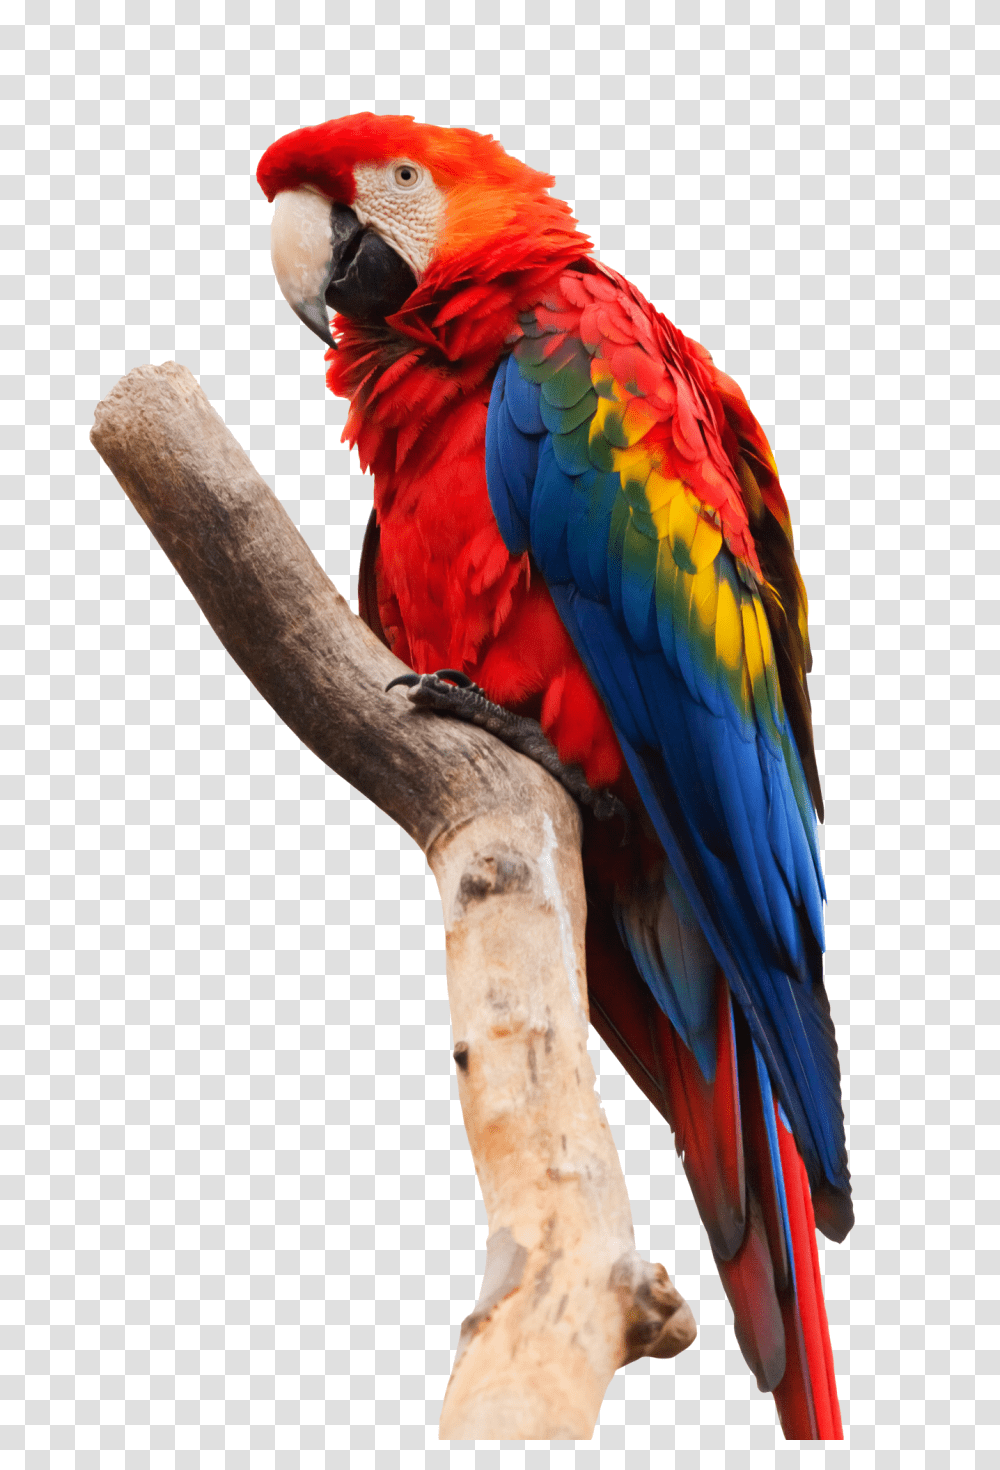 Images, Parrot Macaw Image, Animals, Bird Transparent Png